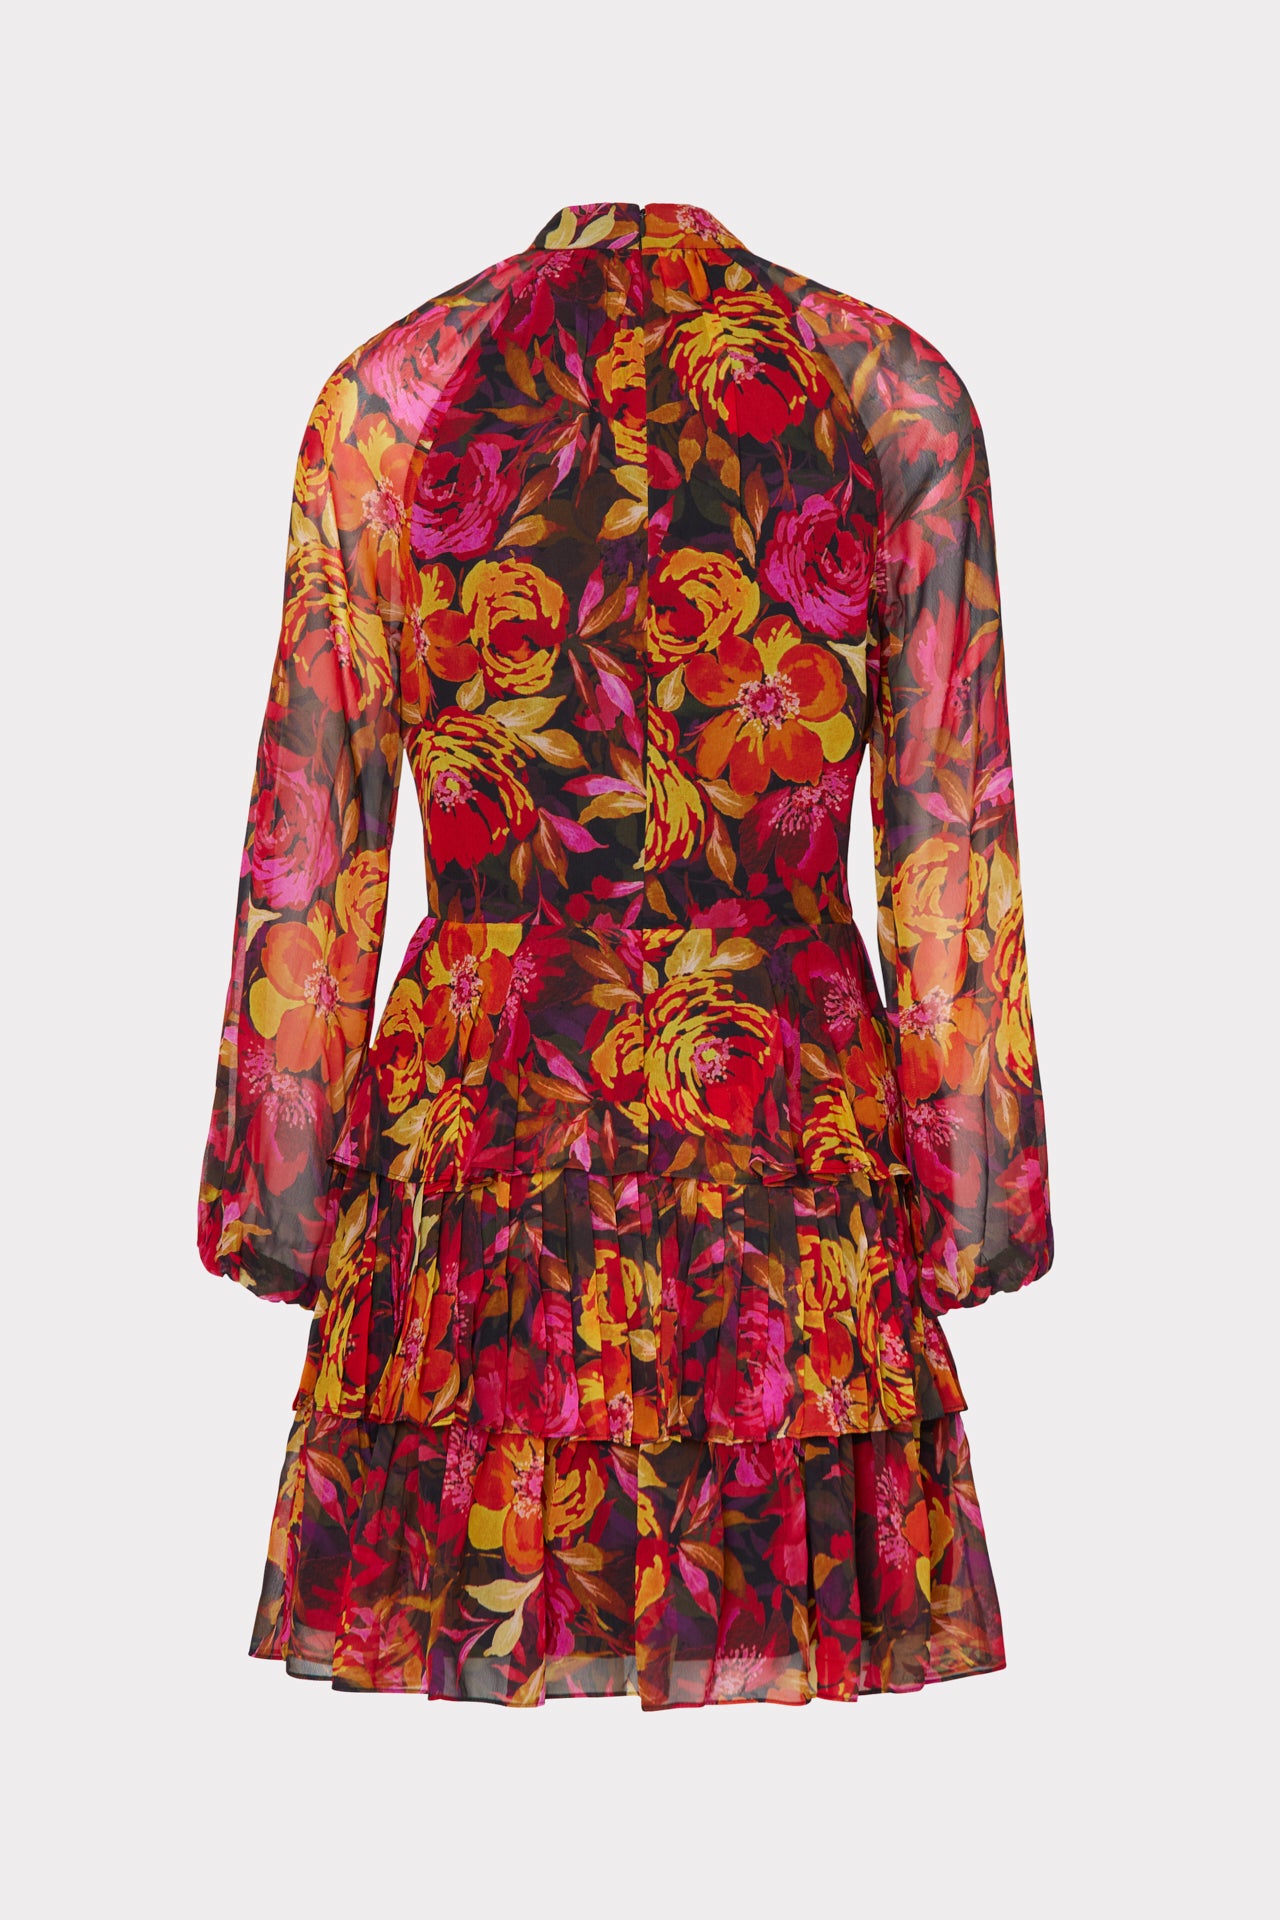 Iyla Fall Foliage Print Dress